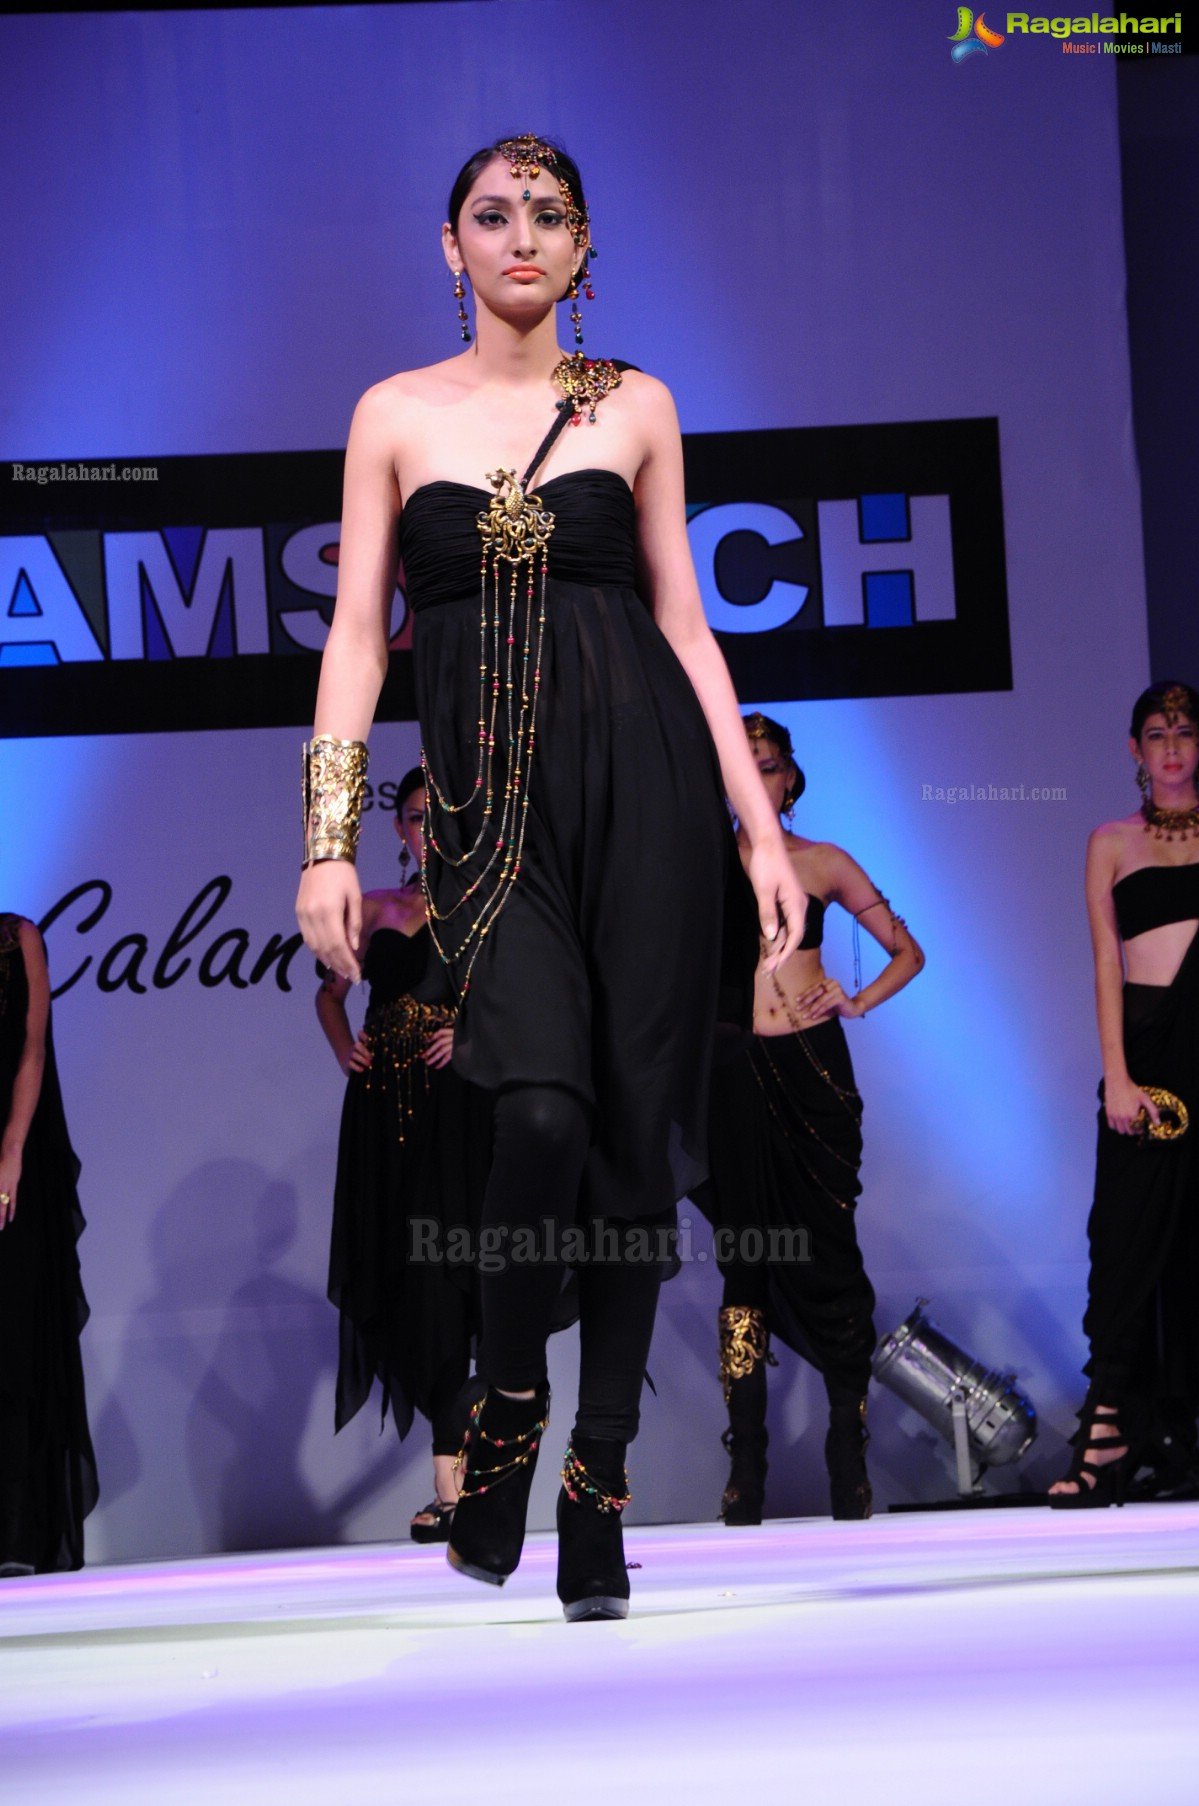 Hamstech Calantha Fashion Show 2012